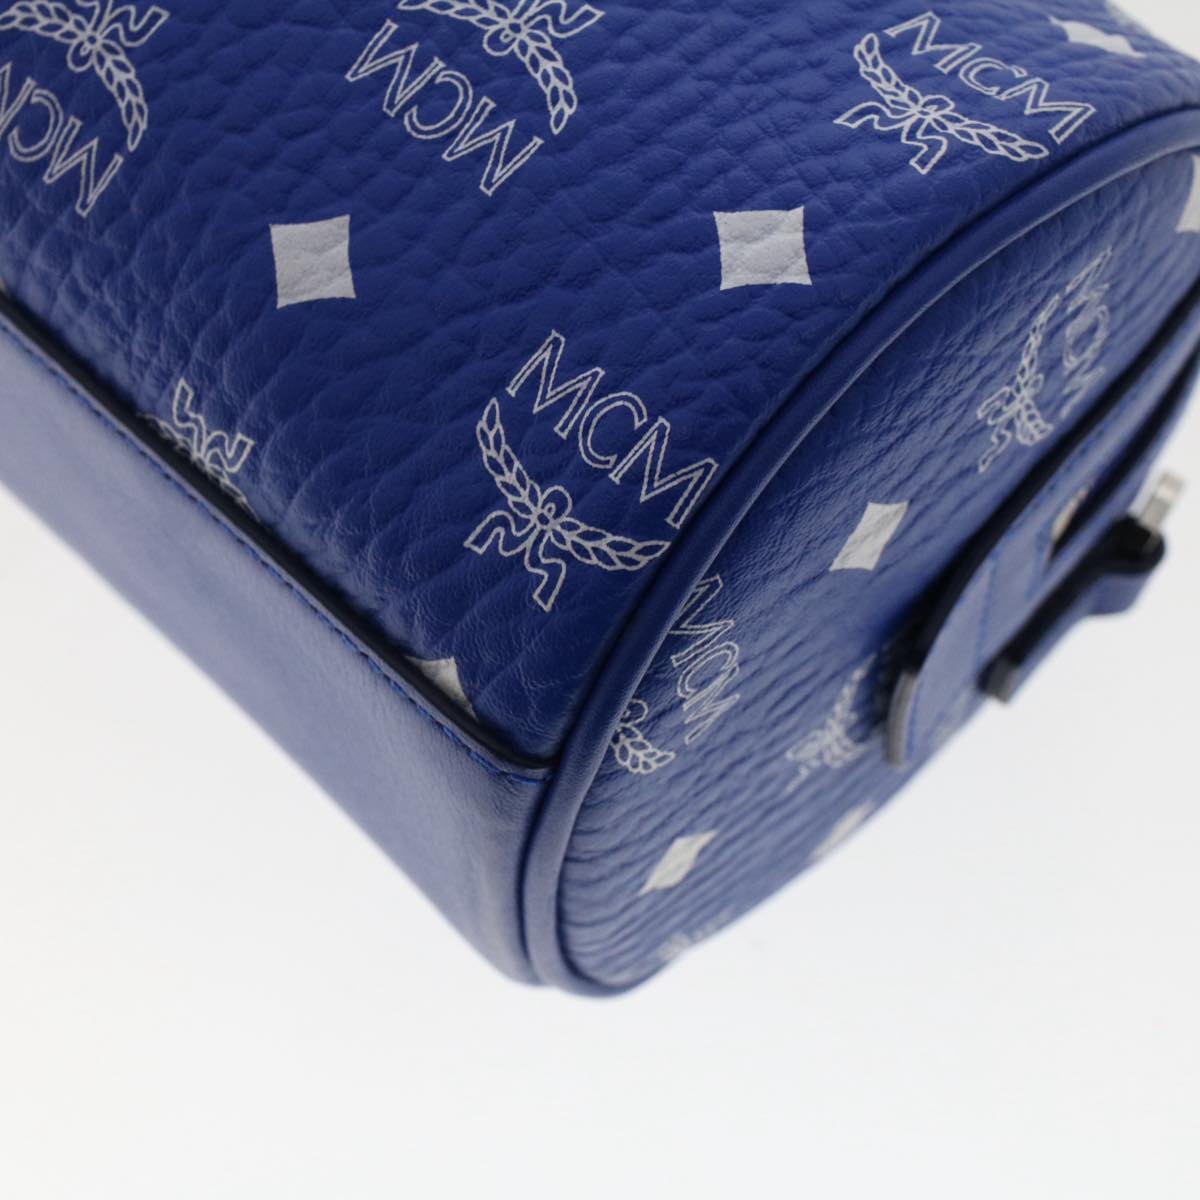 Mcm Vicetos Logogram Shoulder Bag Pvc Leather Blue Auth 49441